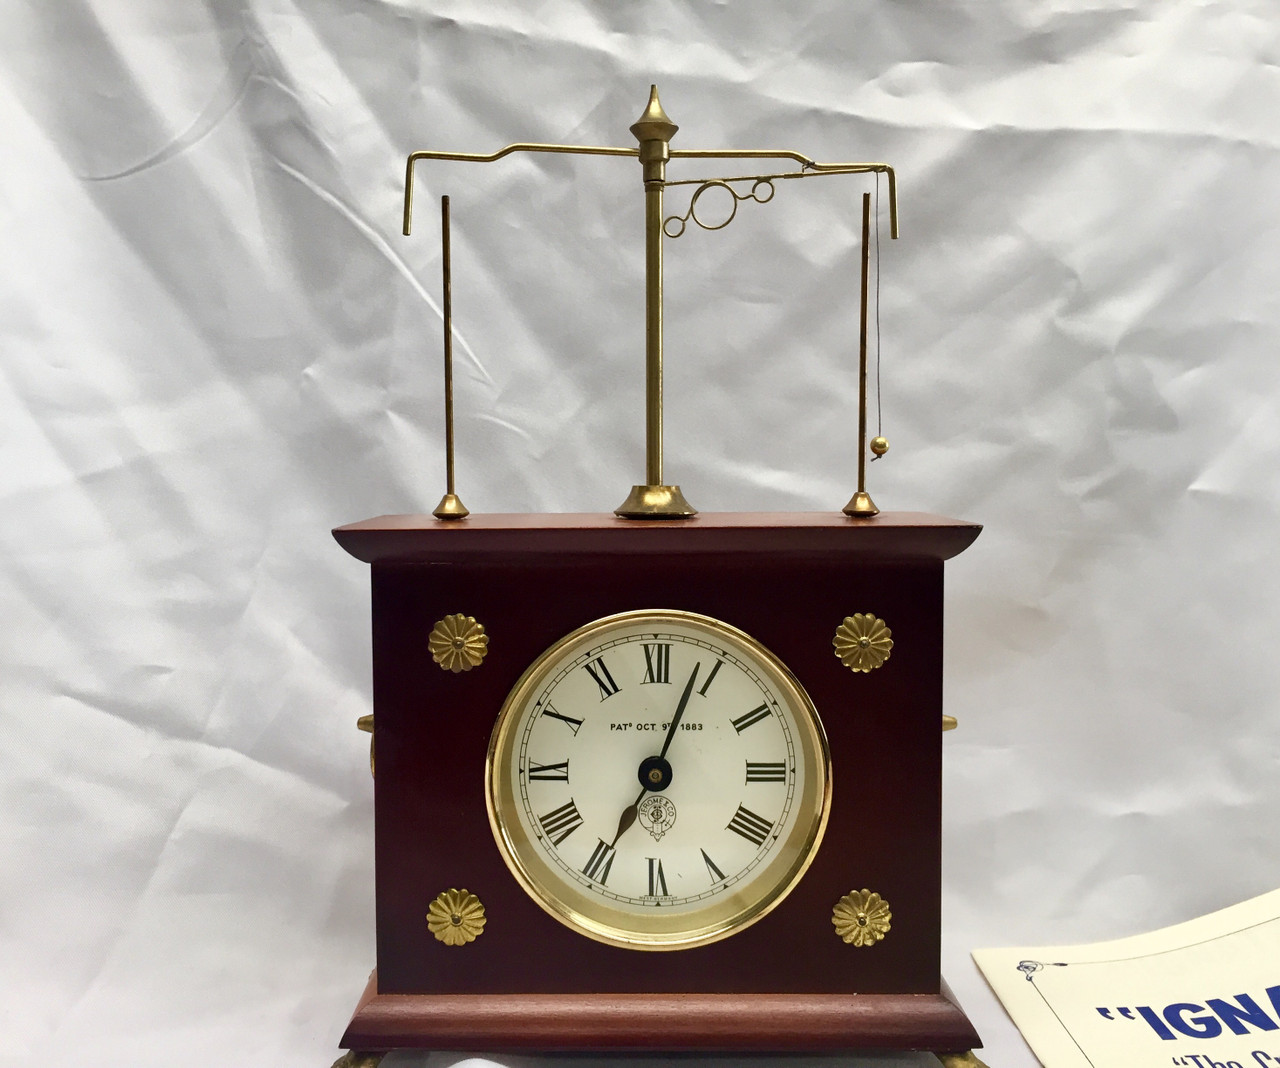 Ignatz Horolovar Ball & Cord for the Horolovar Flying Pendulum Clock 